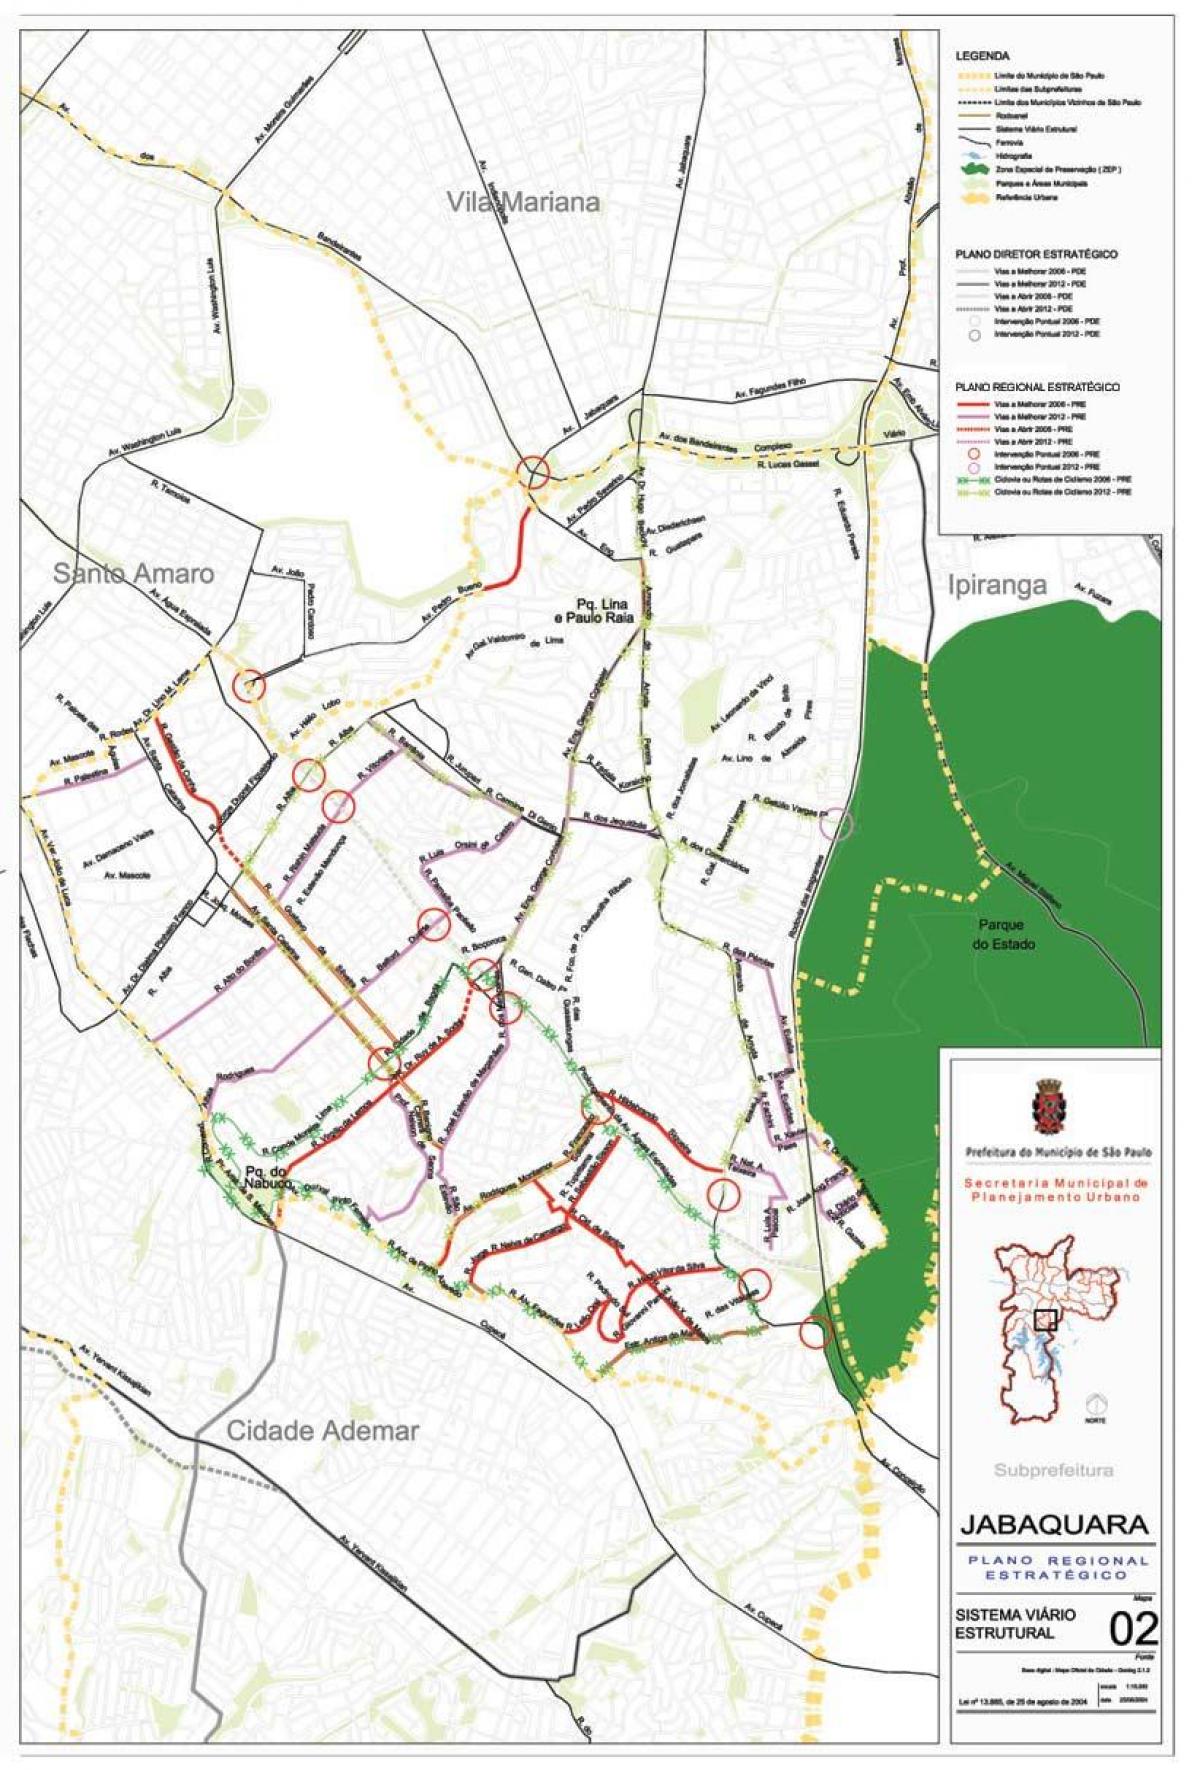 Mapa do Jabaquara-São Paulo - Estradas